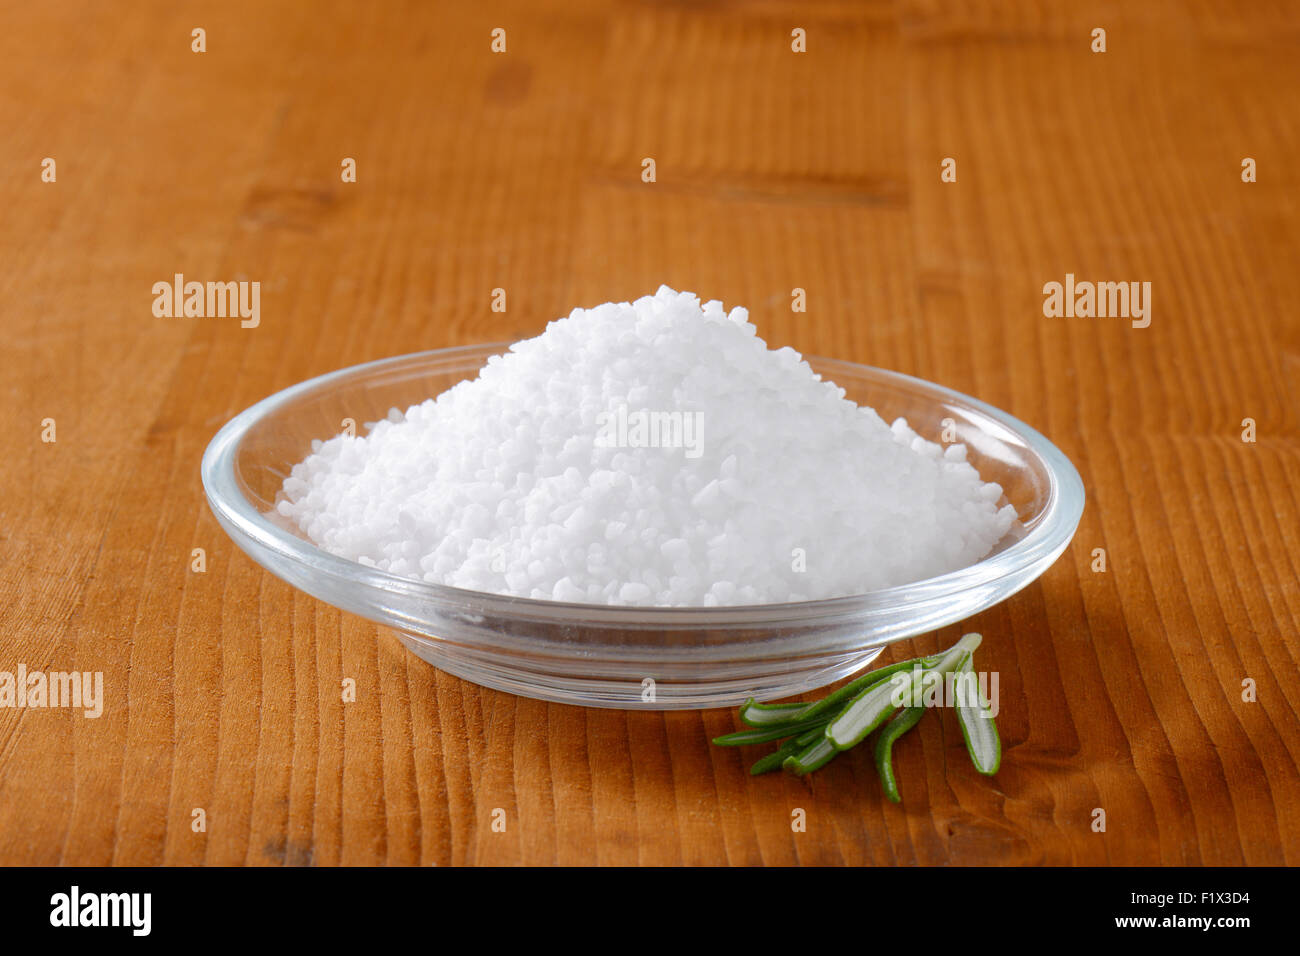 La sal comestible de grano grueso en la pequeña placa de vidrio Foto de stock